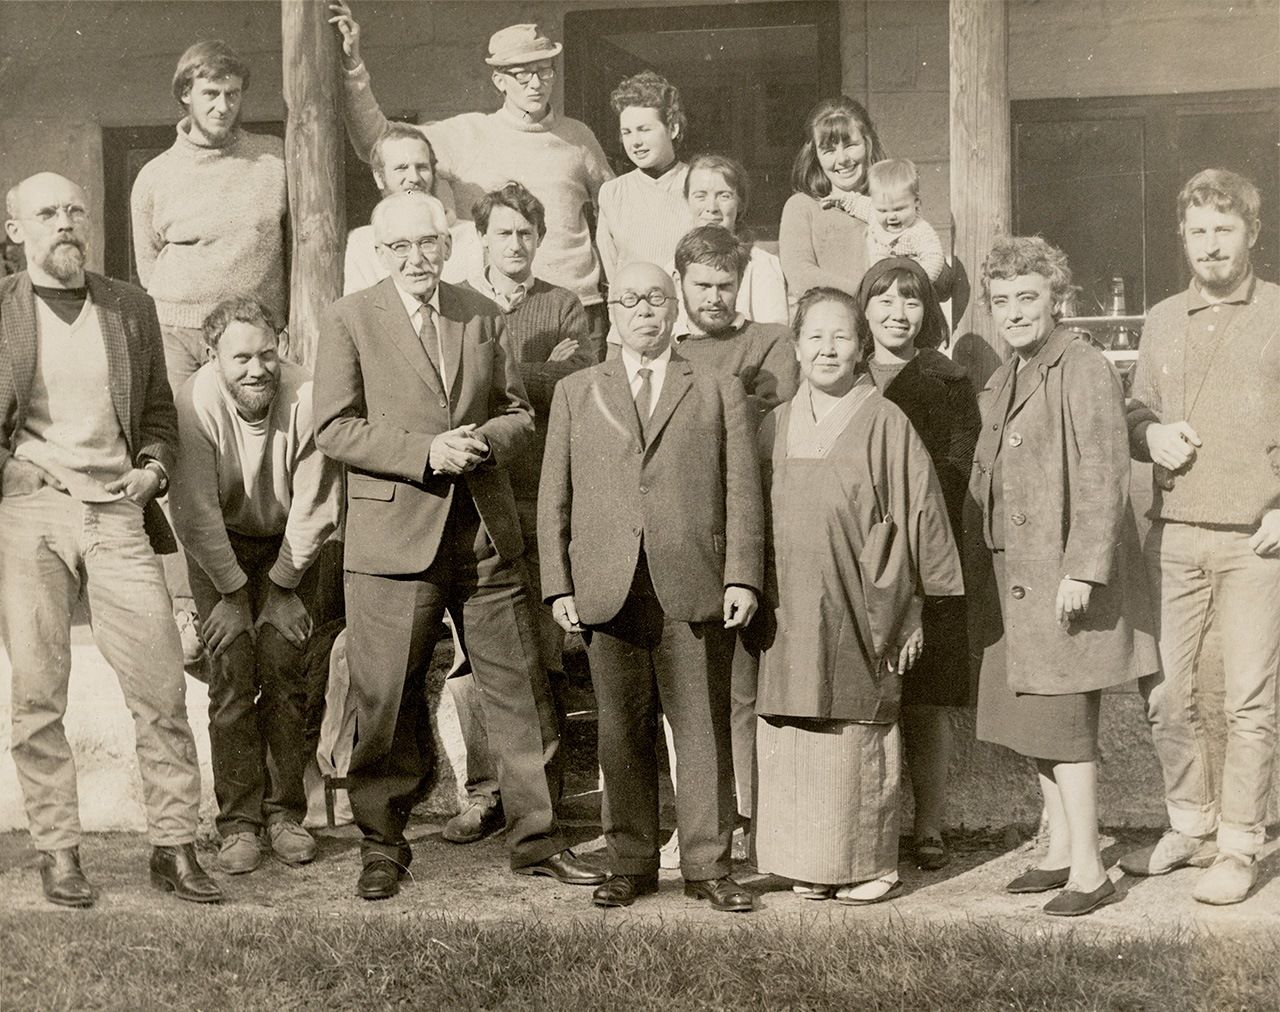 1960年、リーチ工房にて工房のスタッフと一緒に写るリーチと濱田。前列左から3人目がリーチ、右隣が濱田と妻。（写真提供：英国クラフト・スタディー・センター）